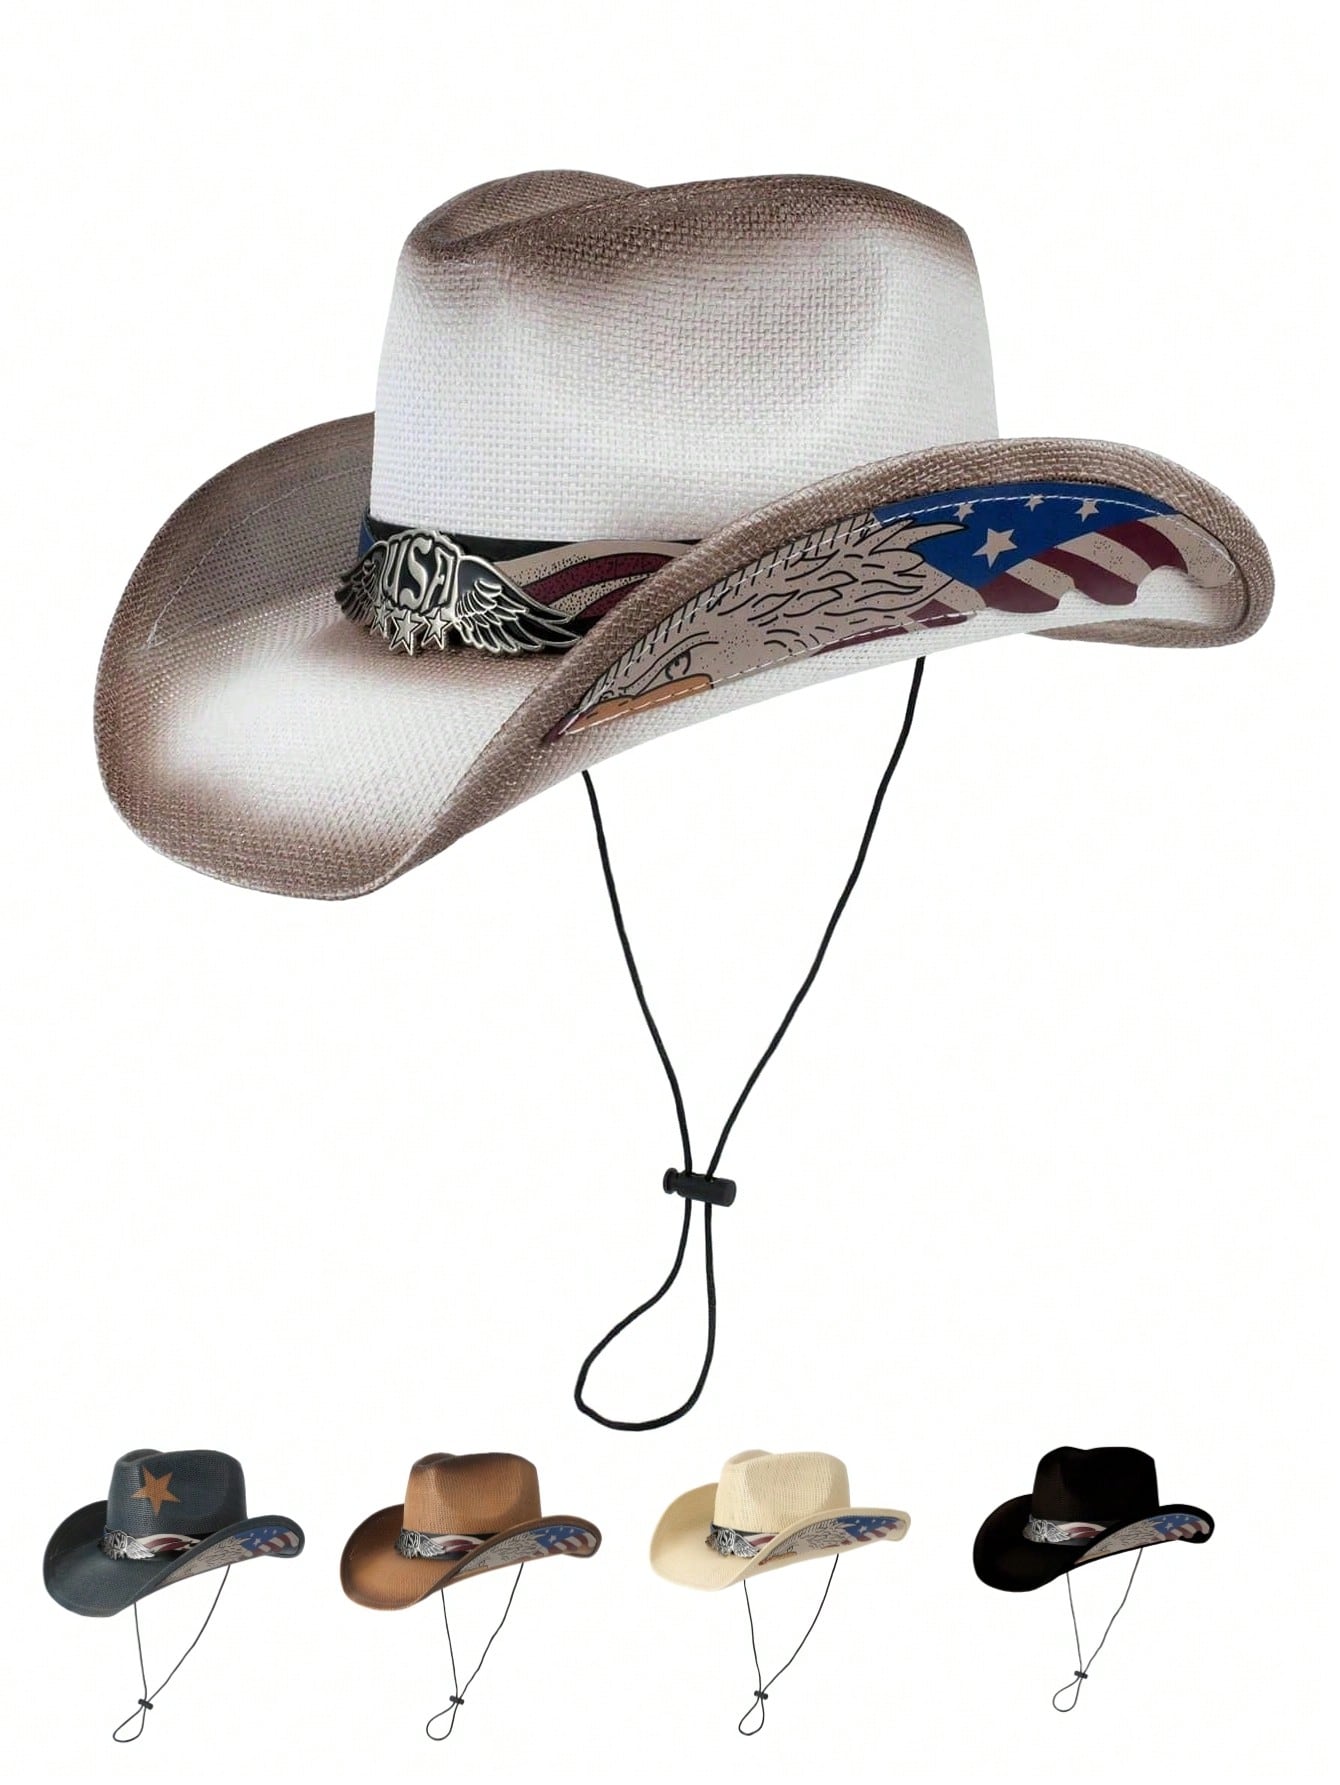 1шт Ковбойская шляпа в стиле вестерн с большими полями и лоскутным дизайном, многоцветный персонализированная широкополая фетровая шляпа портативная дышащая унисекс шляпа женская шляпа ковбойская шляпа